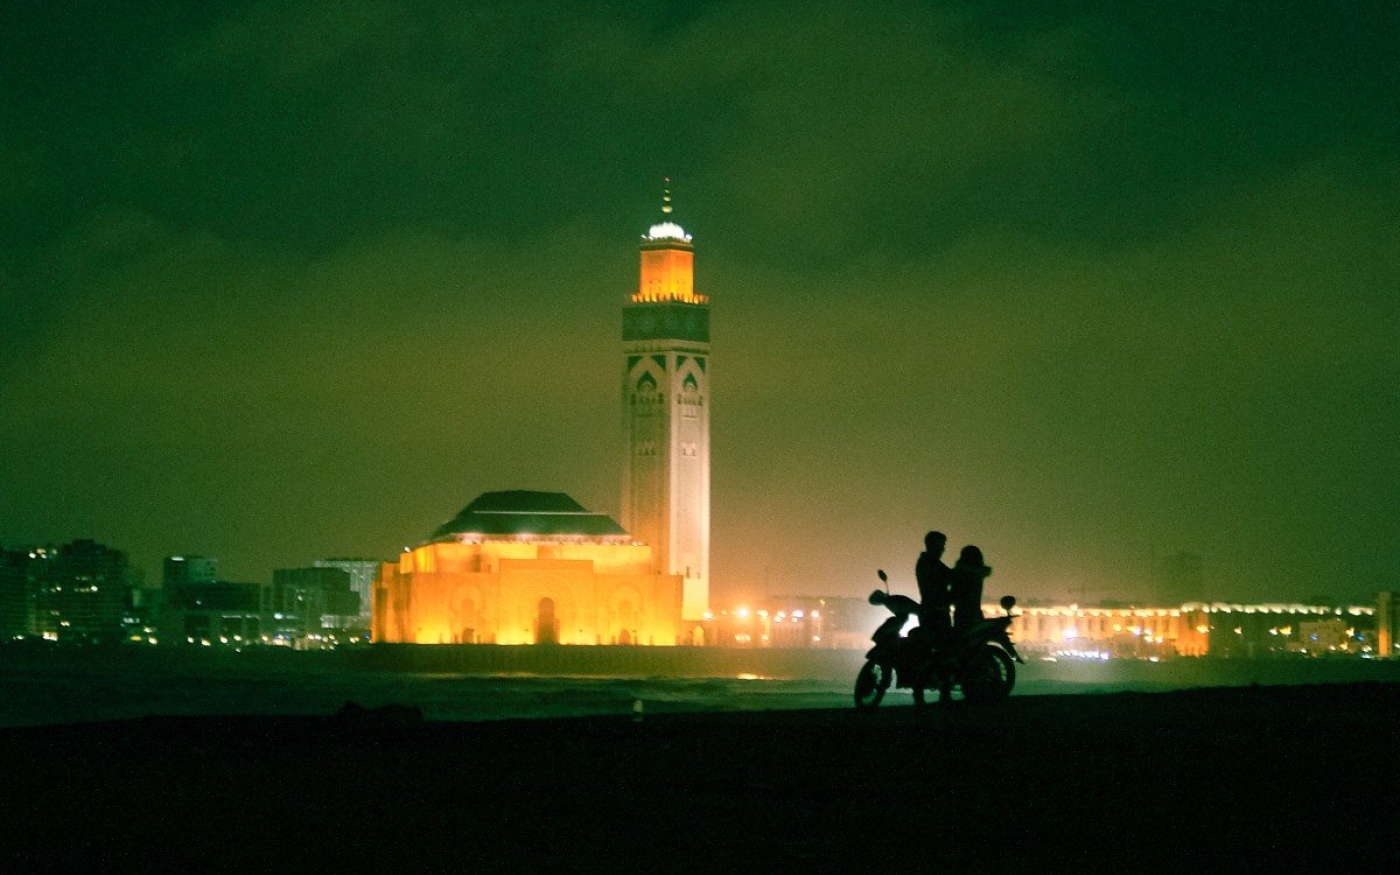 La photographie de Marouane Beslem montre les habitants et les monuments de Casablanca, où il vit actuellement (Marouane Beslem)